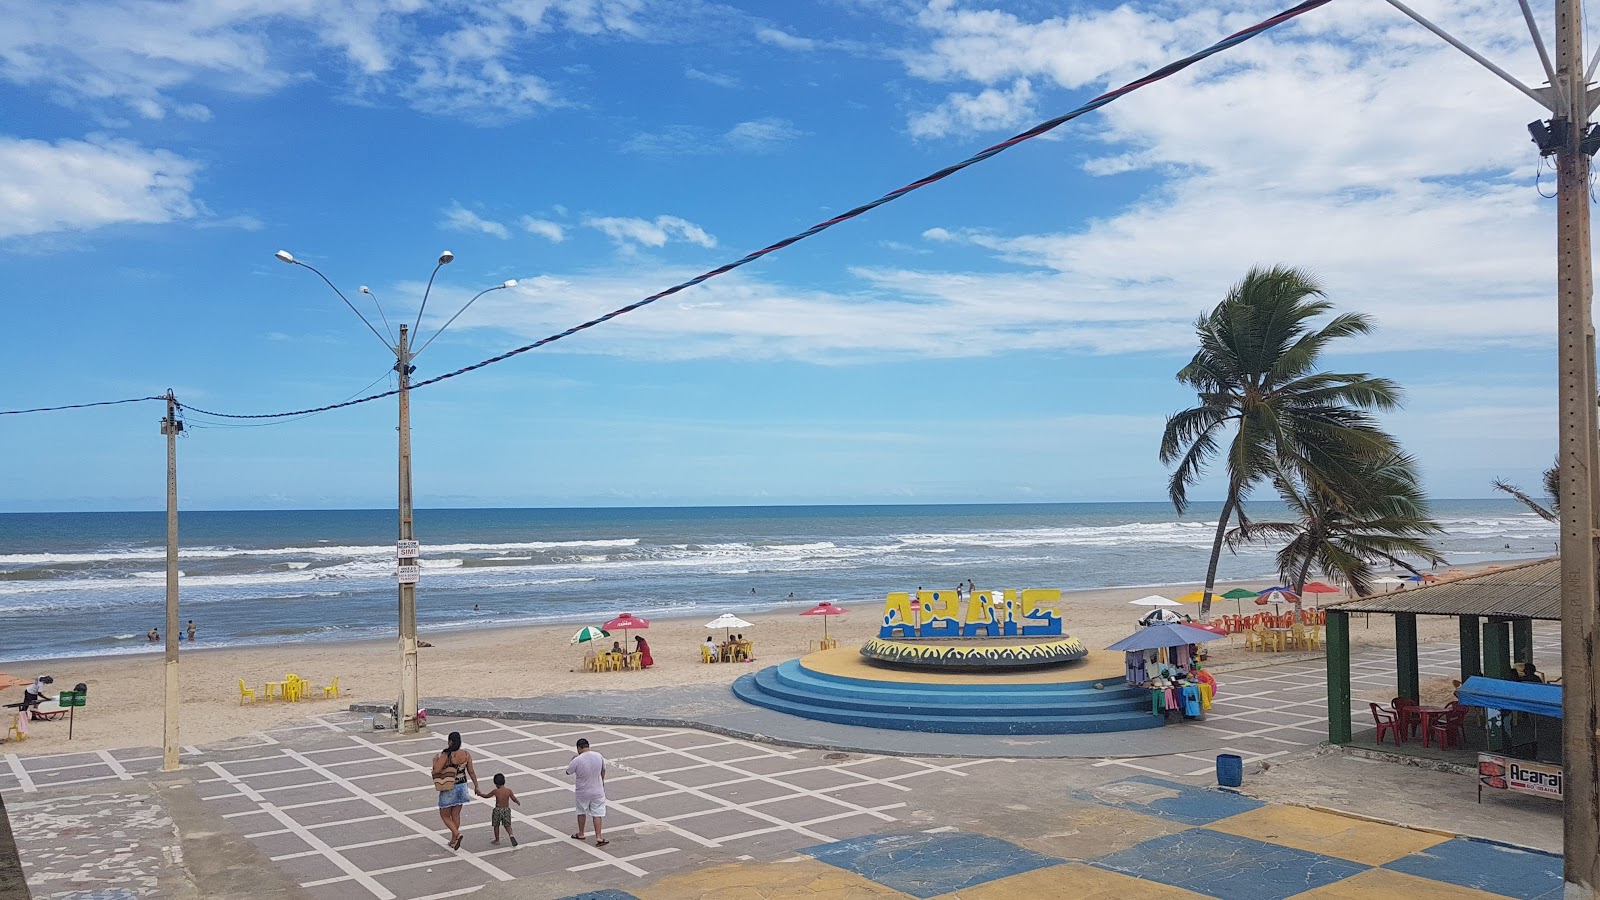 Foto af Praia do abais - populært sted blandt afslapningskendere